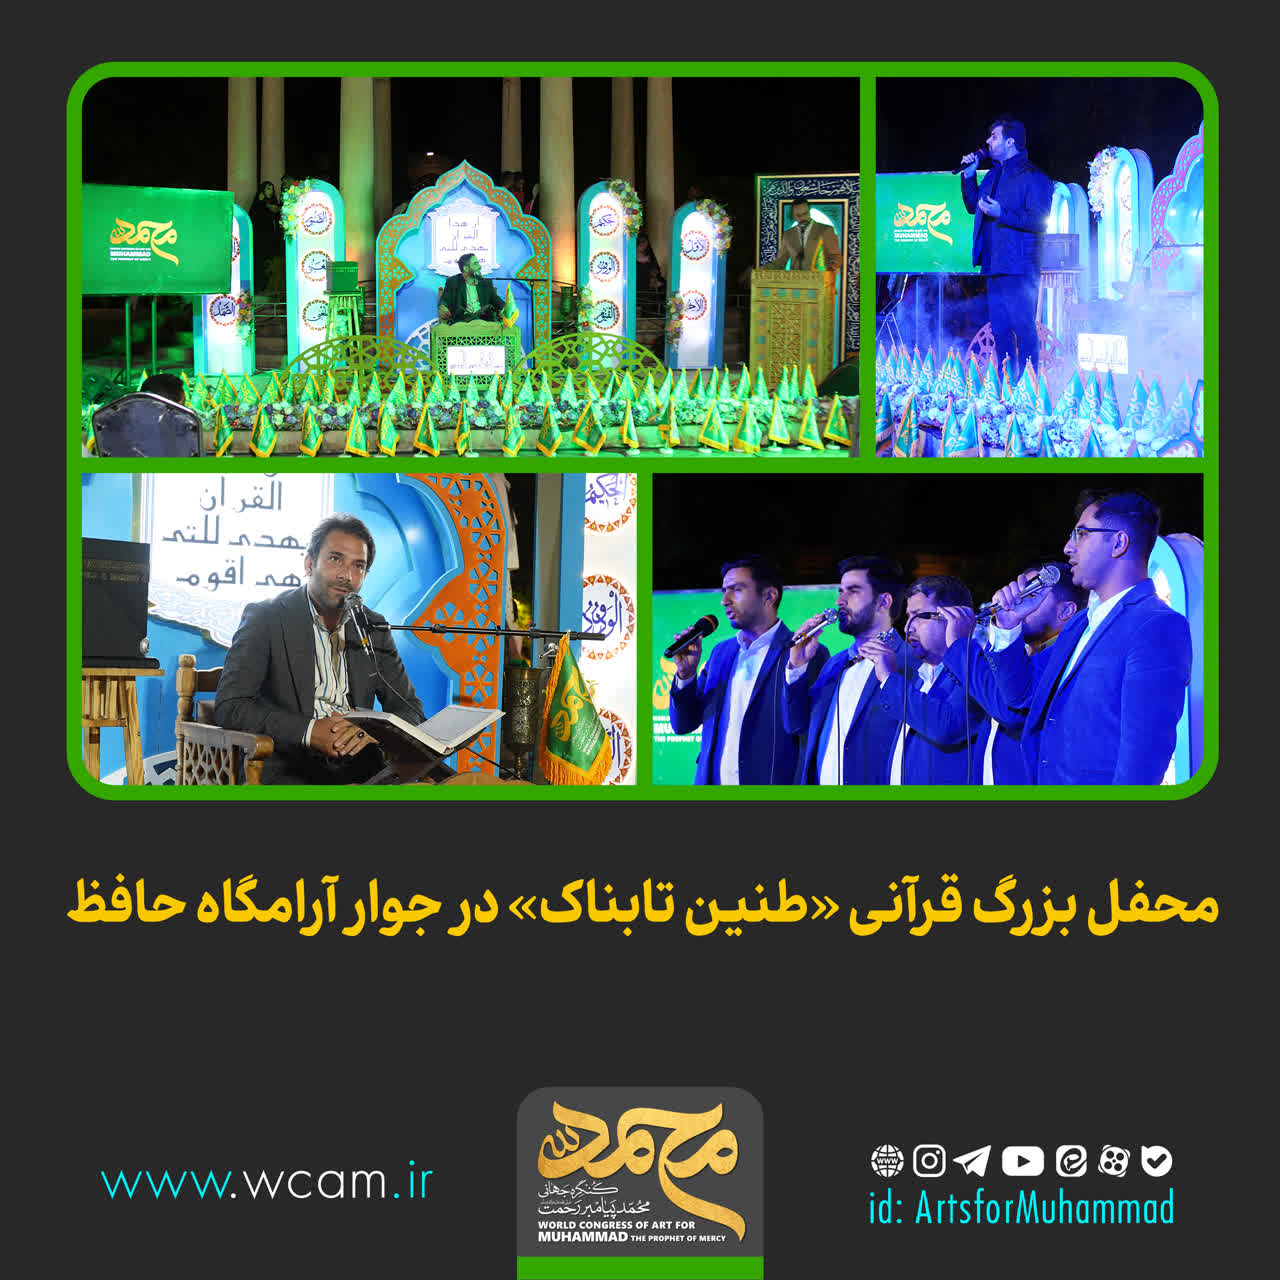 محفل بزرگ قرآنی «طنین تابناک» در جوار آرامگاه حافظ